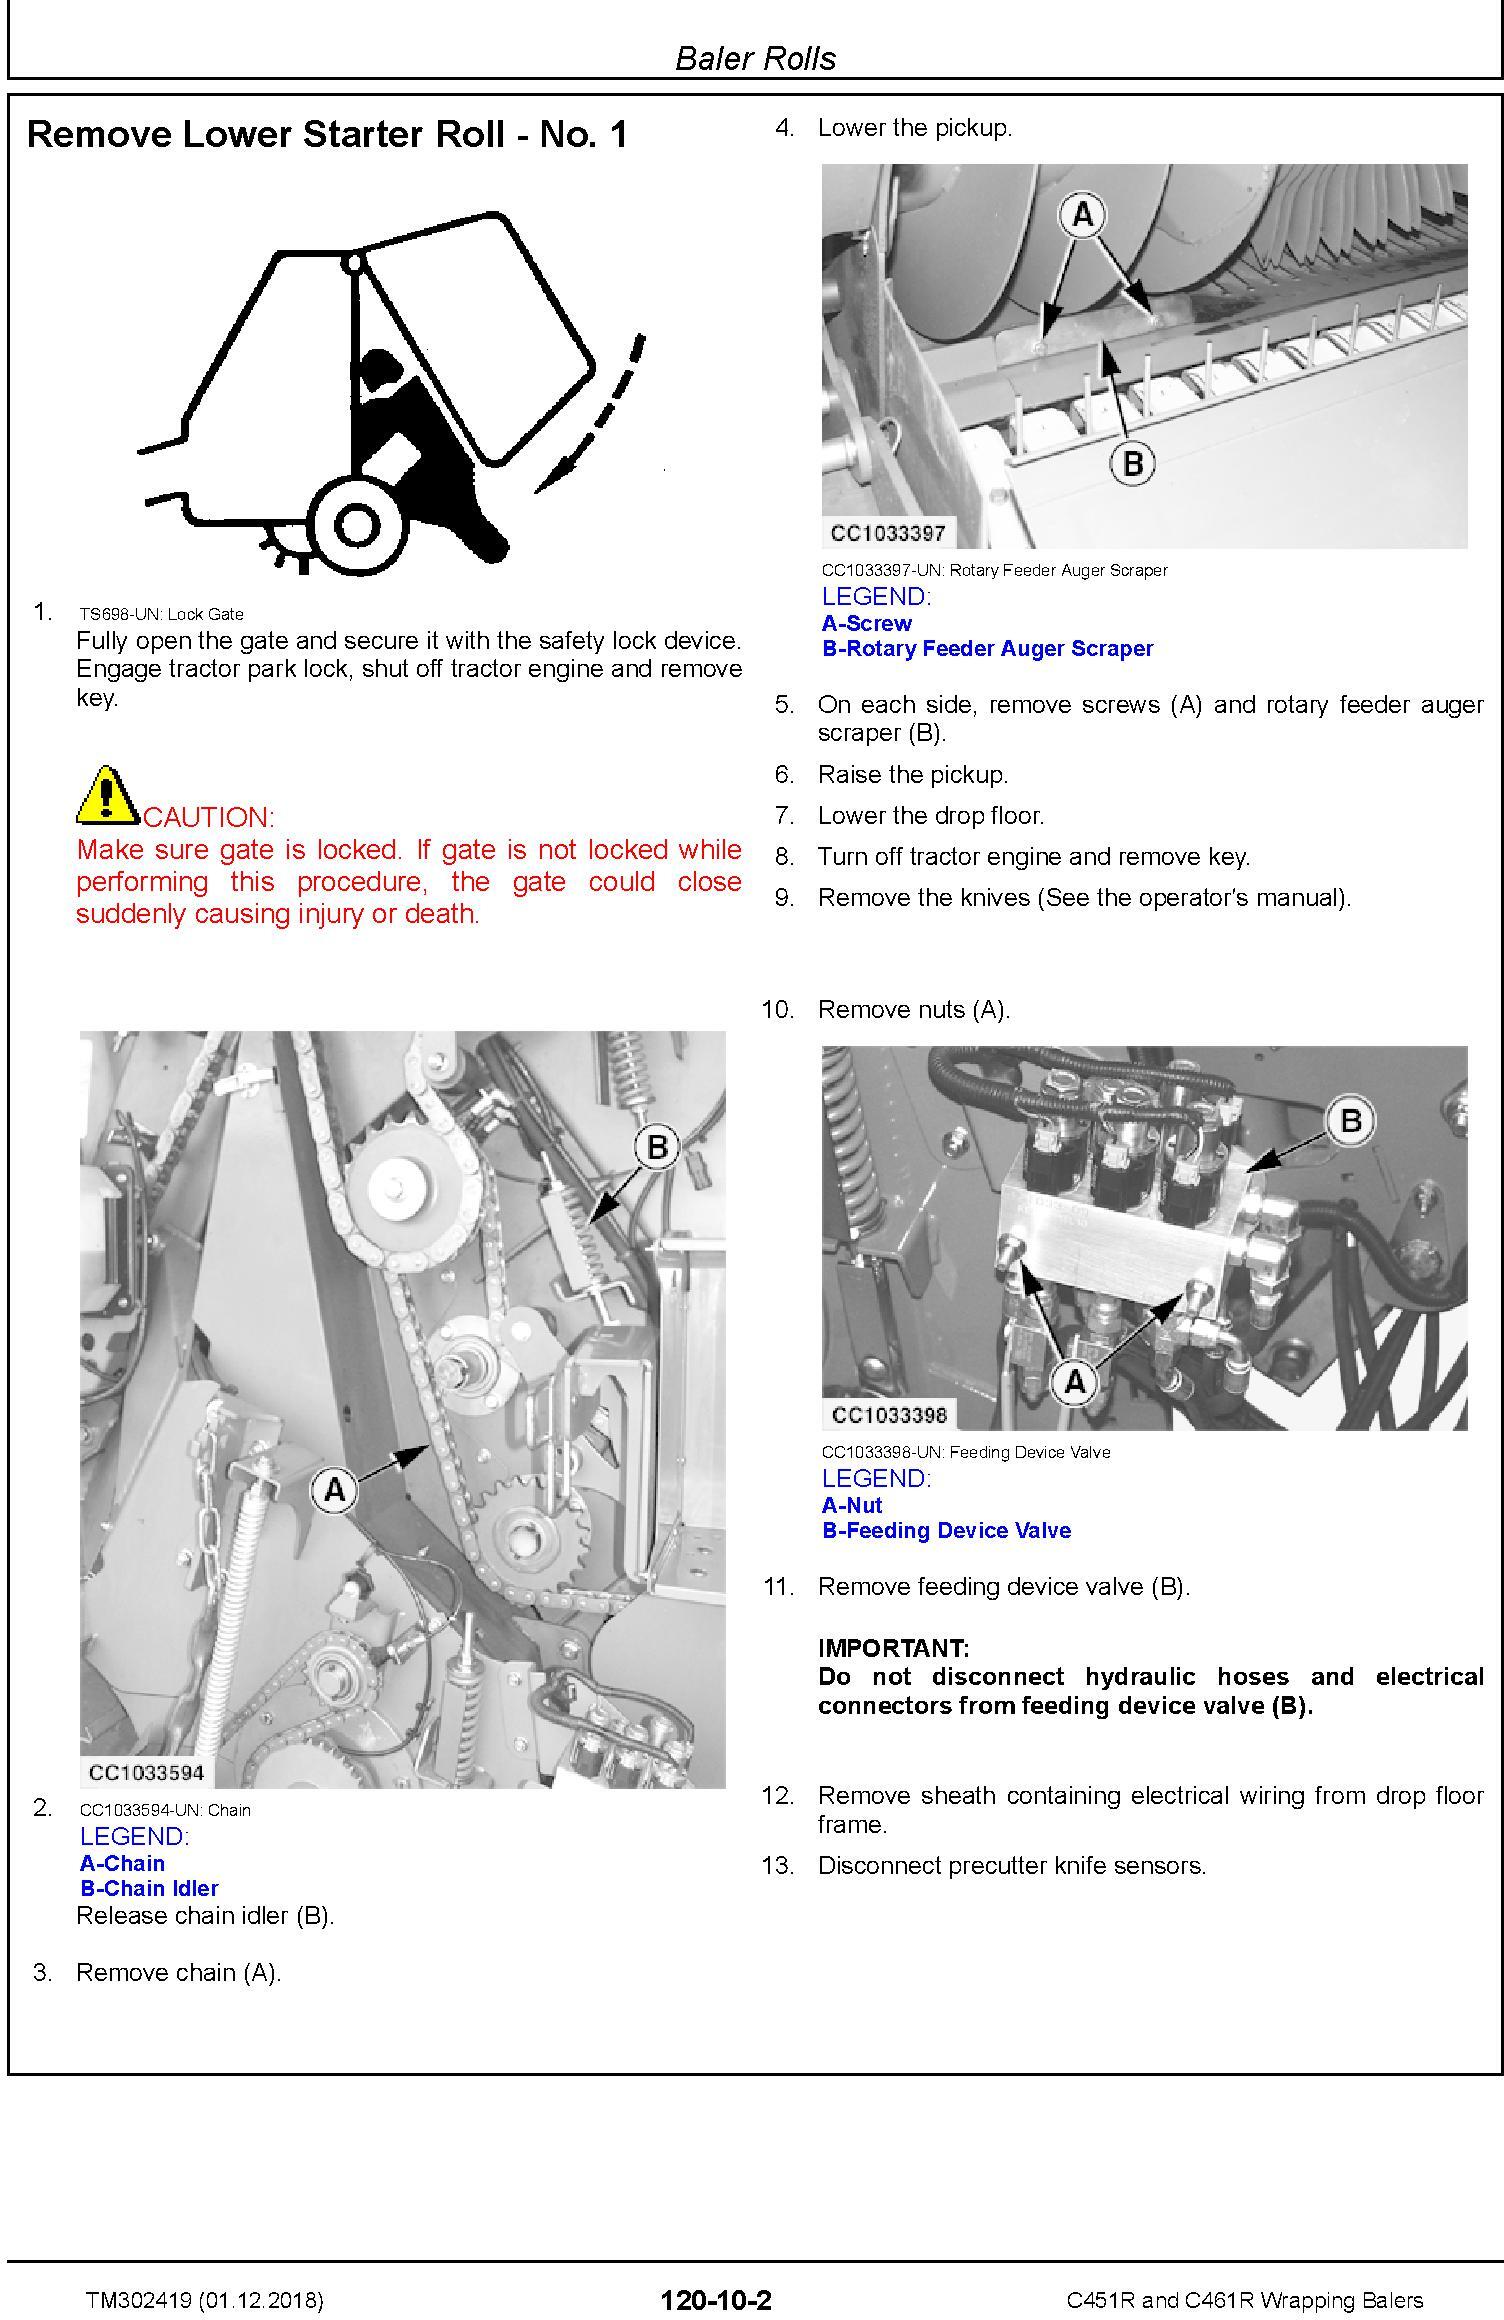 John Deere C451R and C461R Wrapping Balers Service Repair Technical Manual (TM302419) - 1